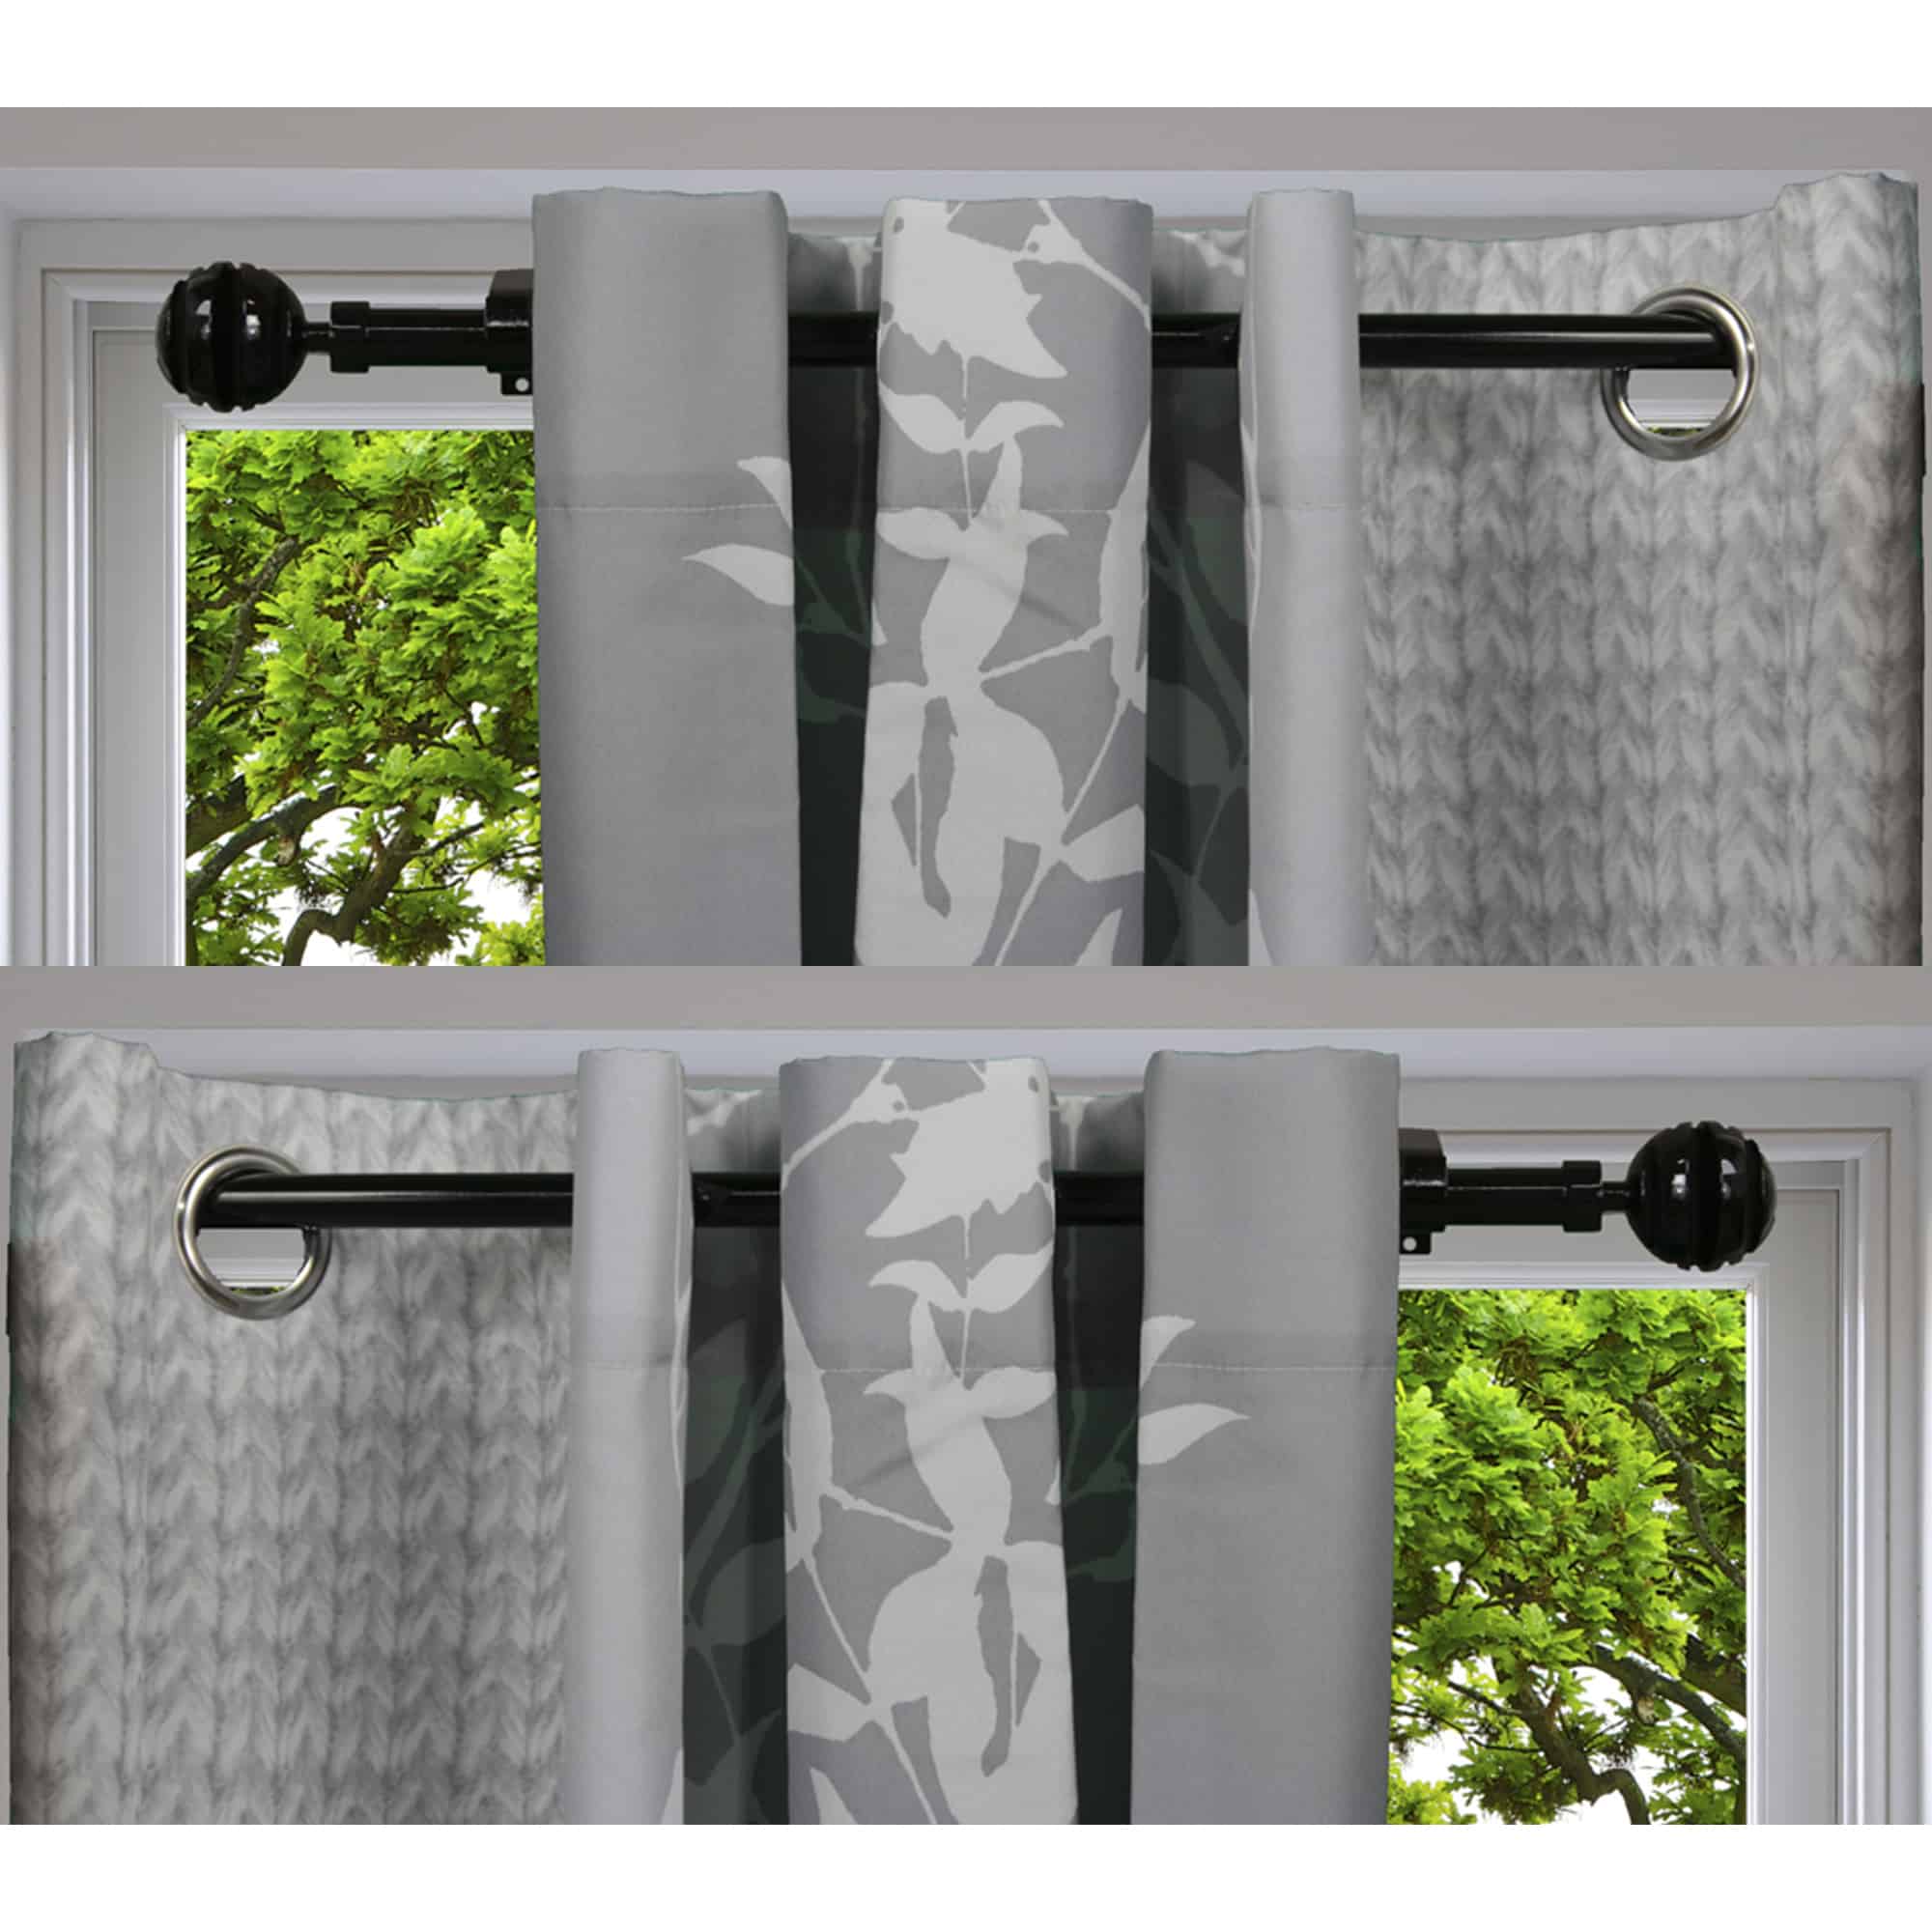 2 Pack Adjustable 3/4" Single Window Curtain Rod 50" to 82" Black